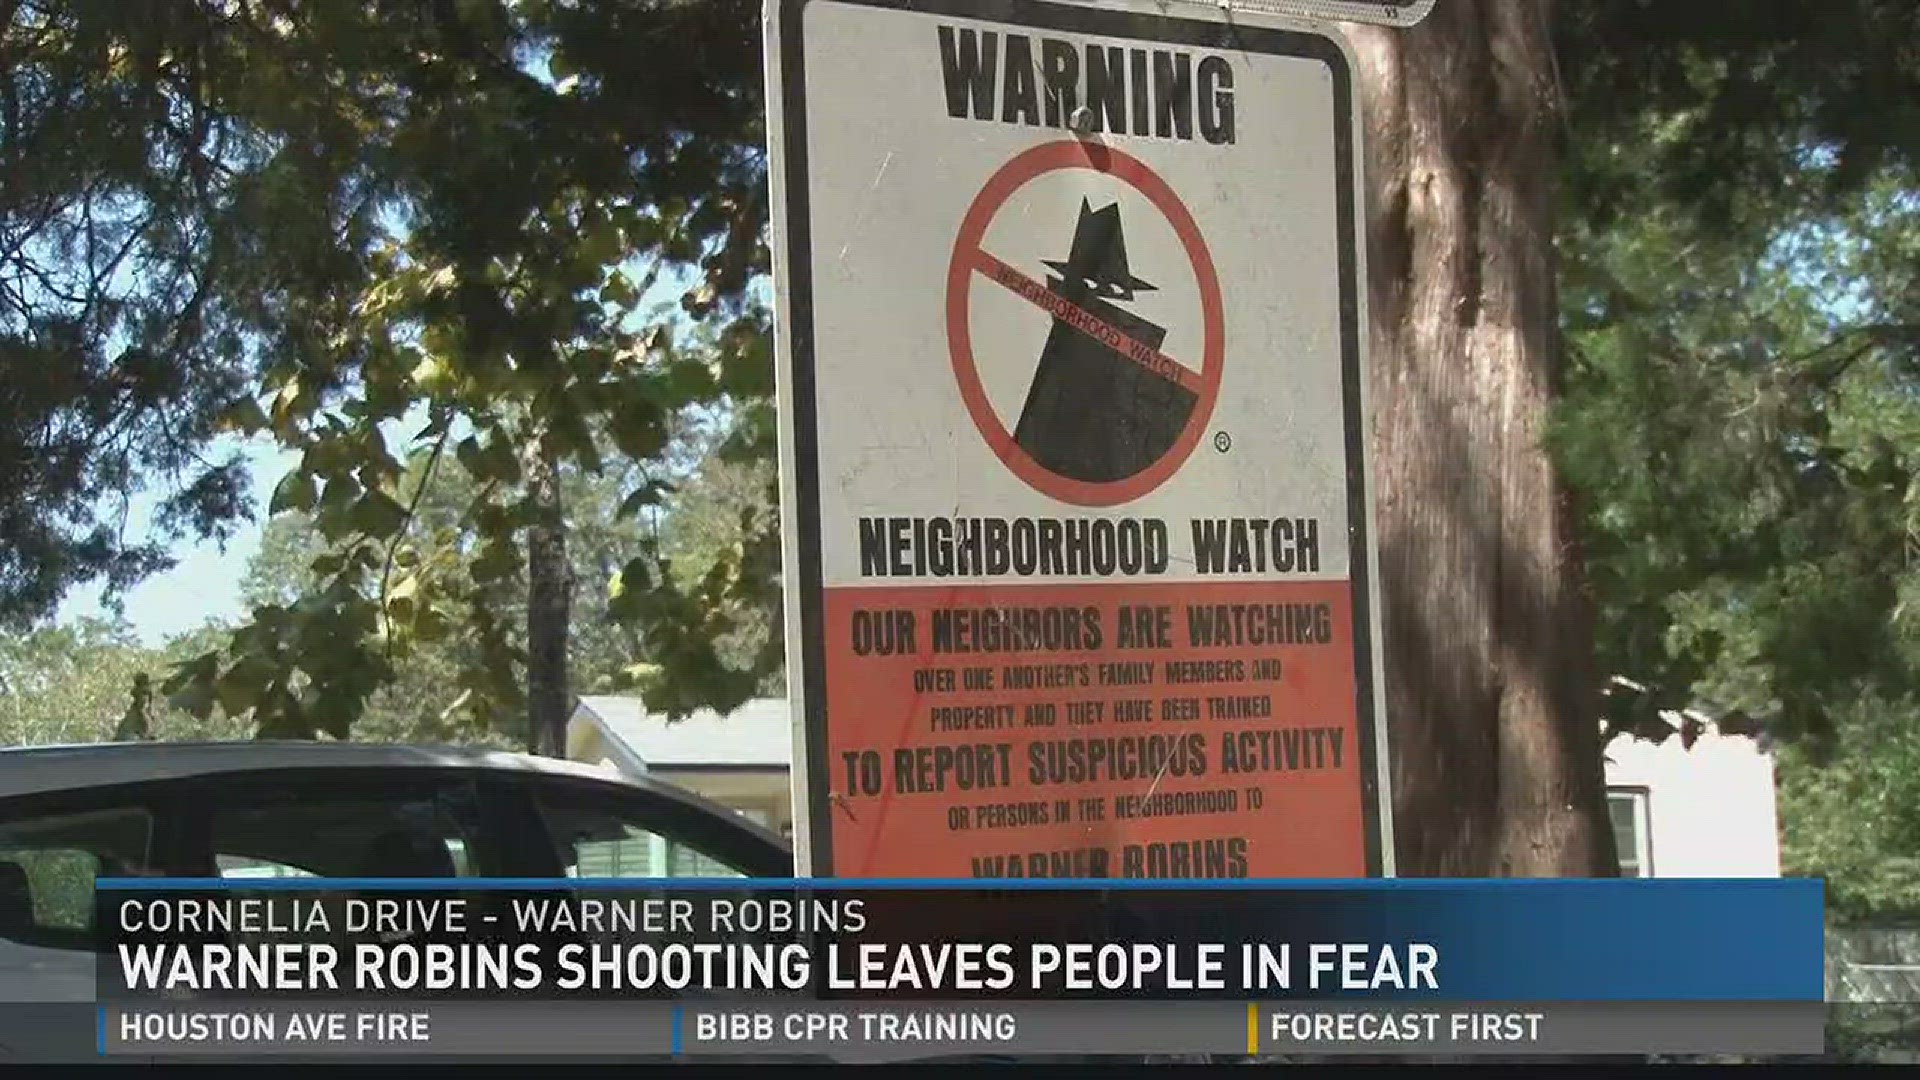 Warner Robins shooting leaves people in fear